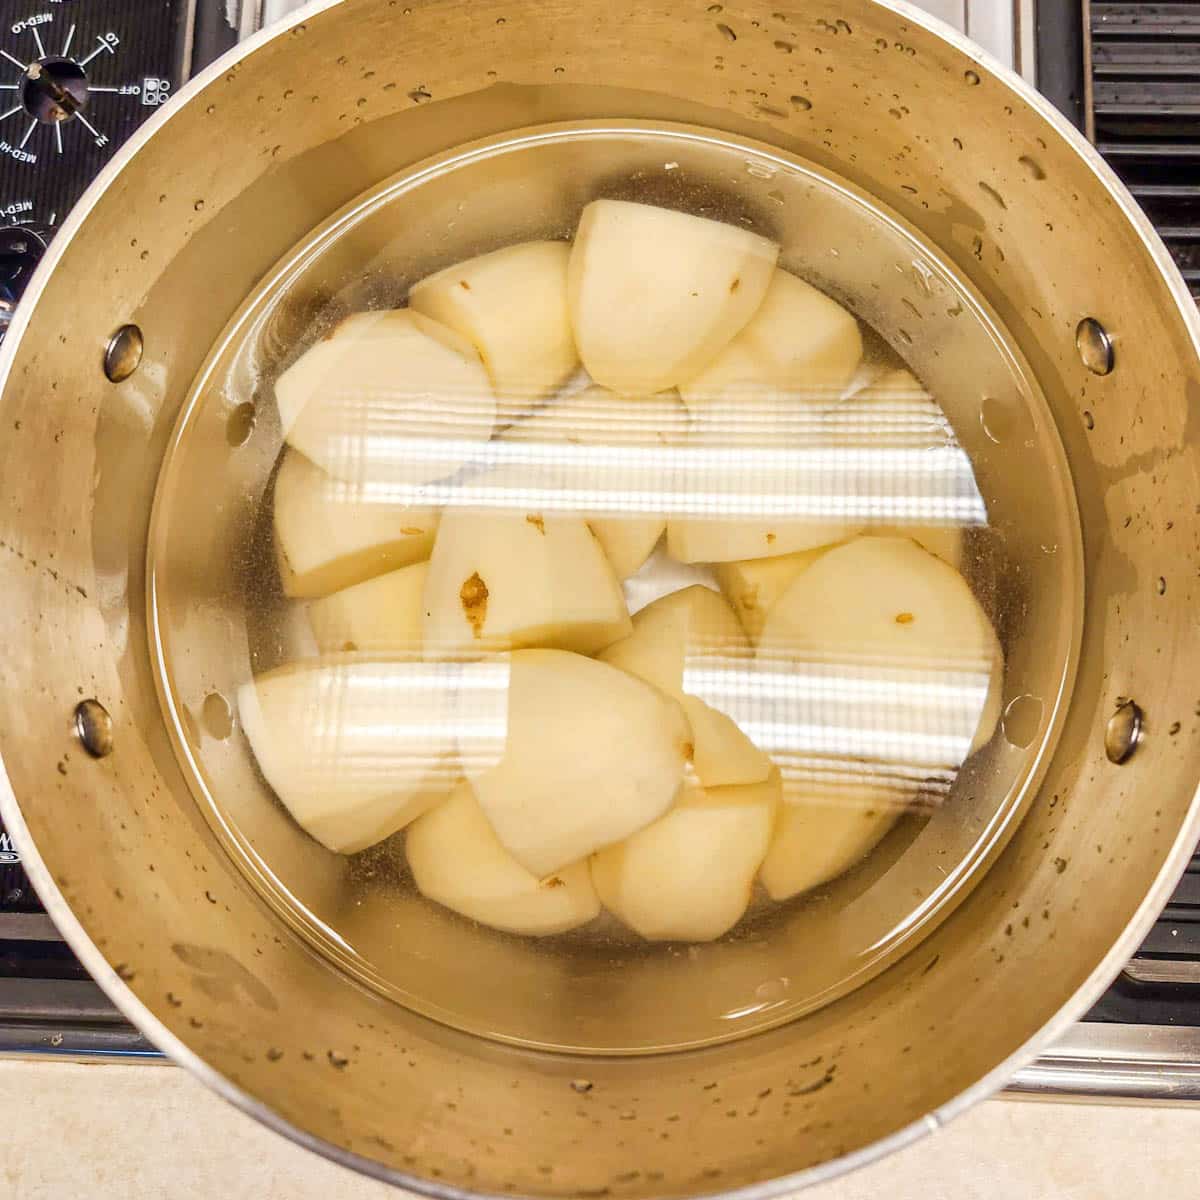 russet potatoes in water